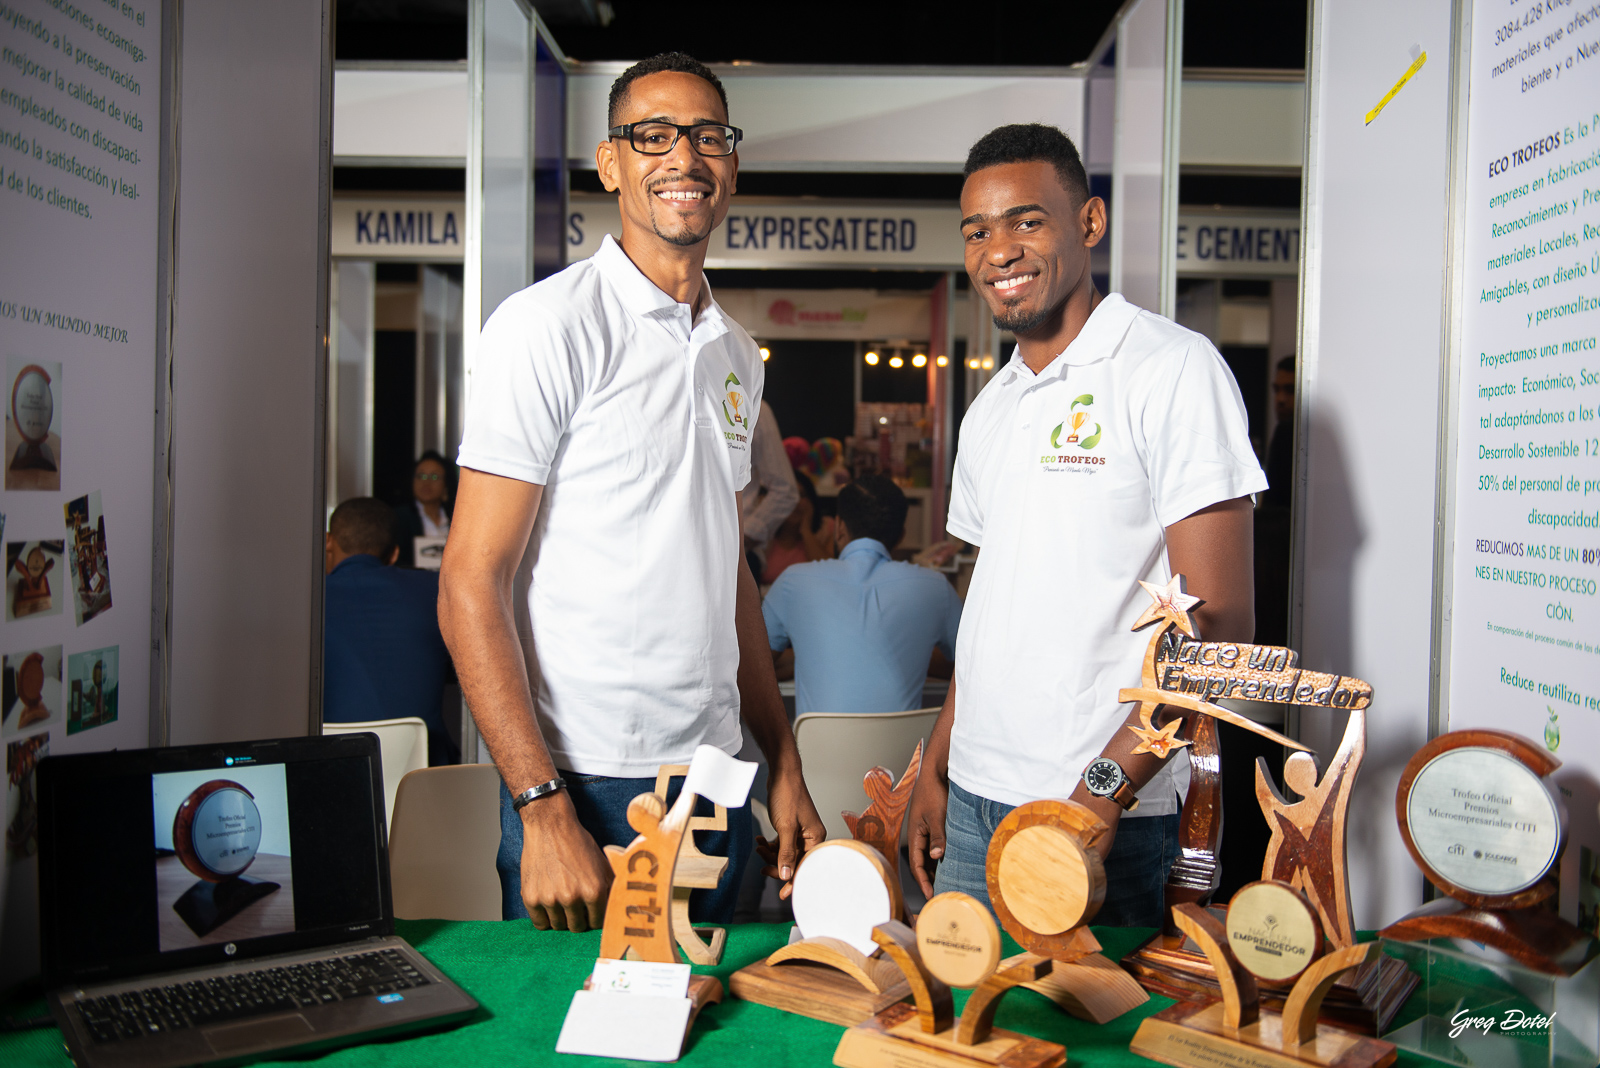 Cobertura de la feria emprendedores donde empresas y emprendedores mostraron sus innovaciones en este importante evento corporativo de la República Dominicana